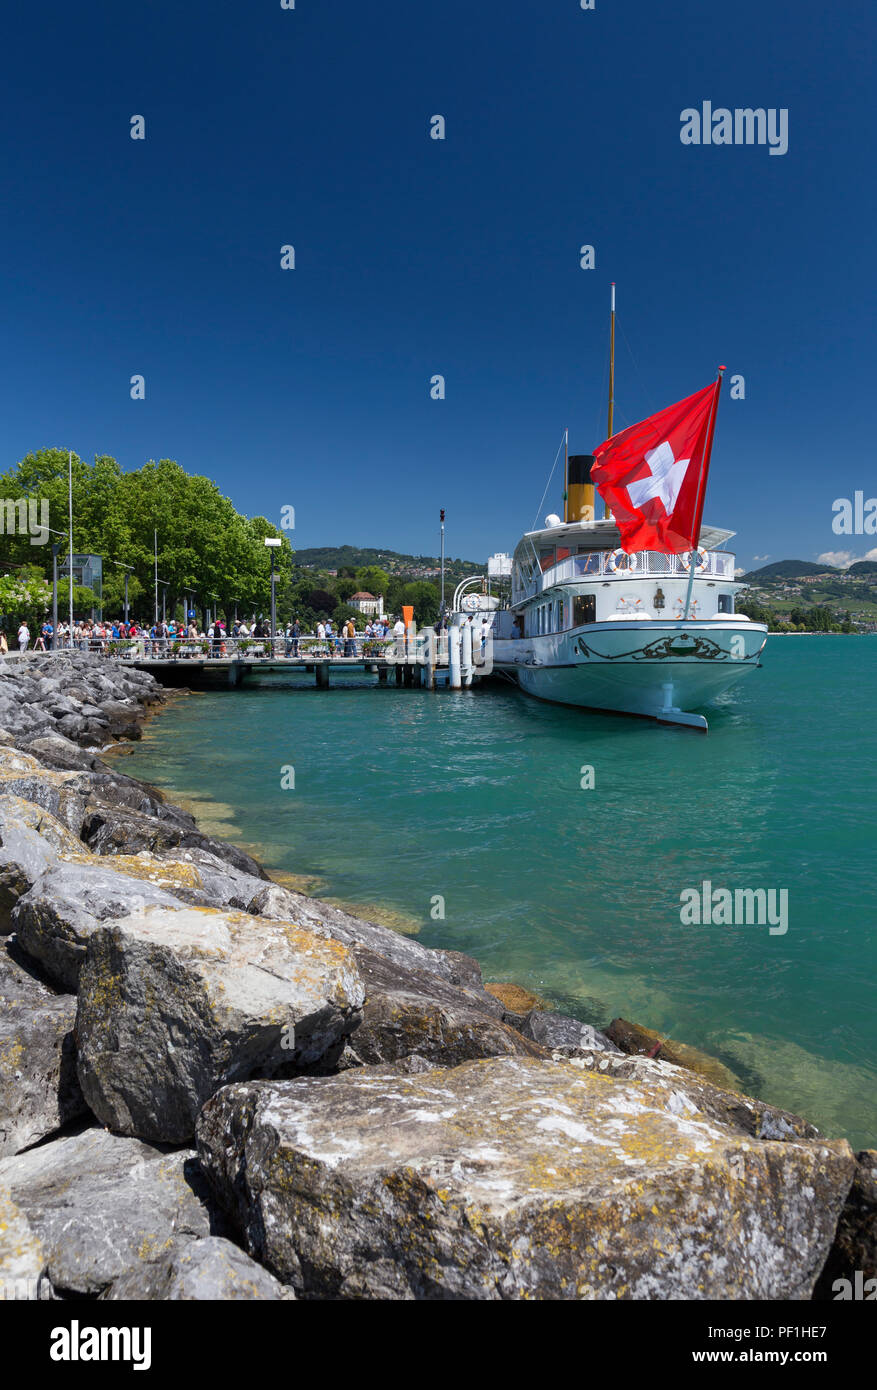 La CGN Belle Epoque" ontreaux "steamboat ramasser des passagers à Lausanne pour un voyage autour du lac de Genève, Suisse. Banque D'Images